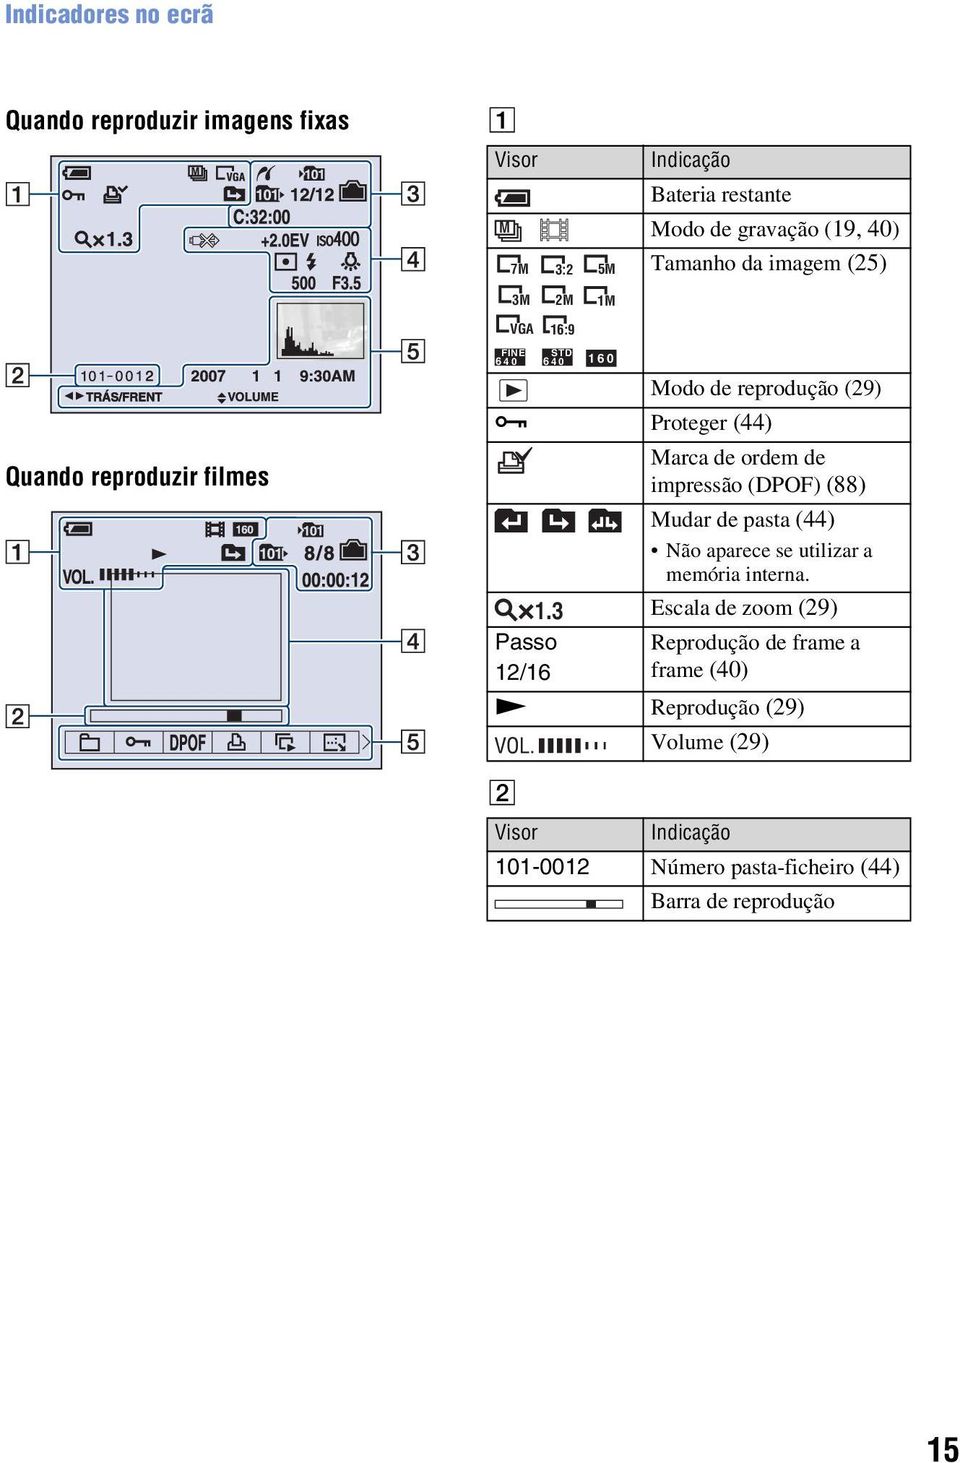 3 Passo 12/16 1M STD 6 40 160 Marca de ordem de impressão (DPOF) (88) Mudar de pasta (44) Não aparece se utilizar a memória interna.